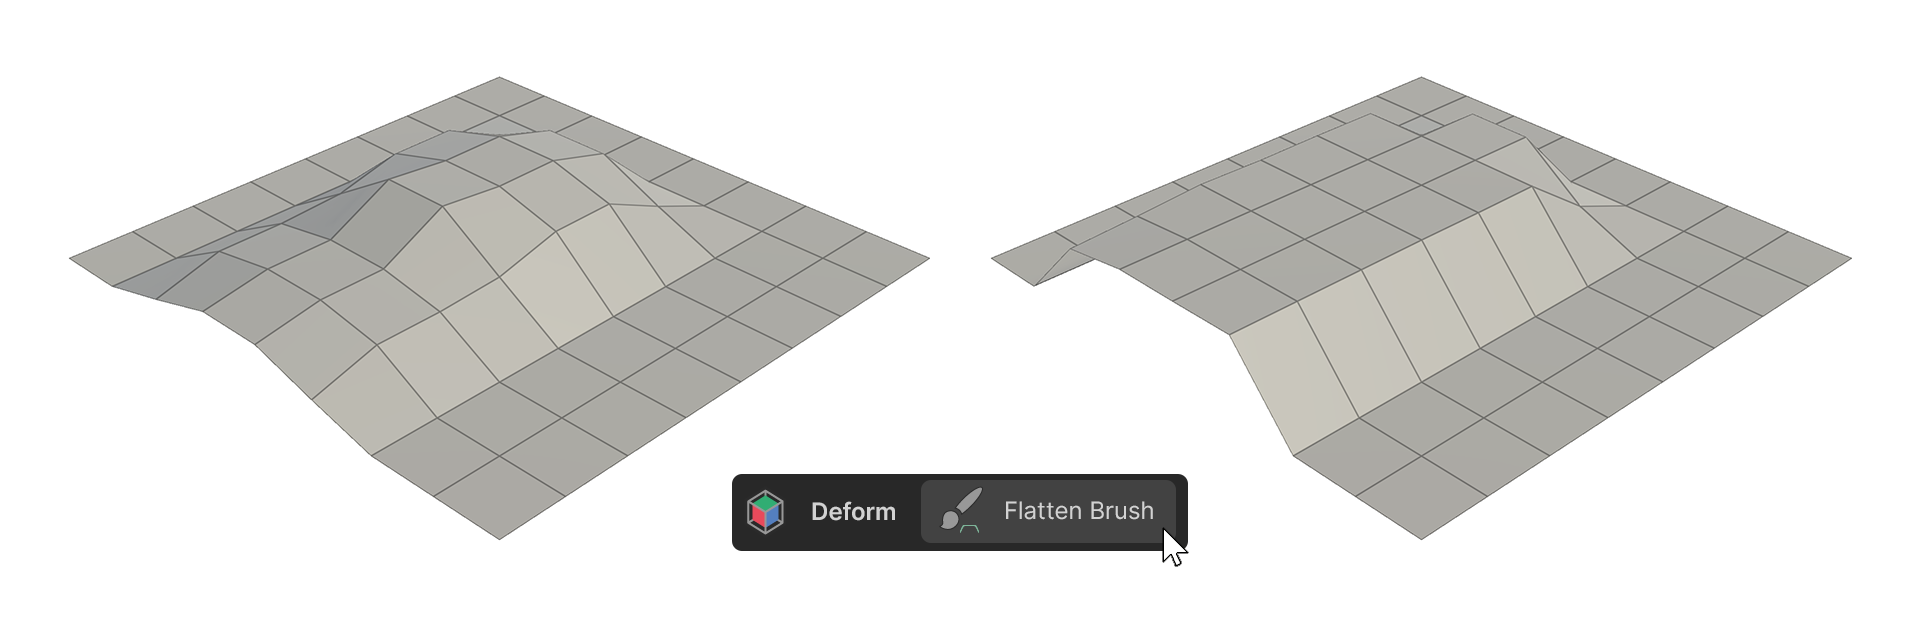 basic_Modeling_Deform_FlattenBrush